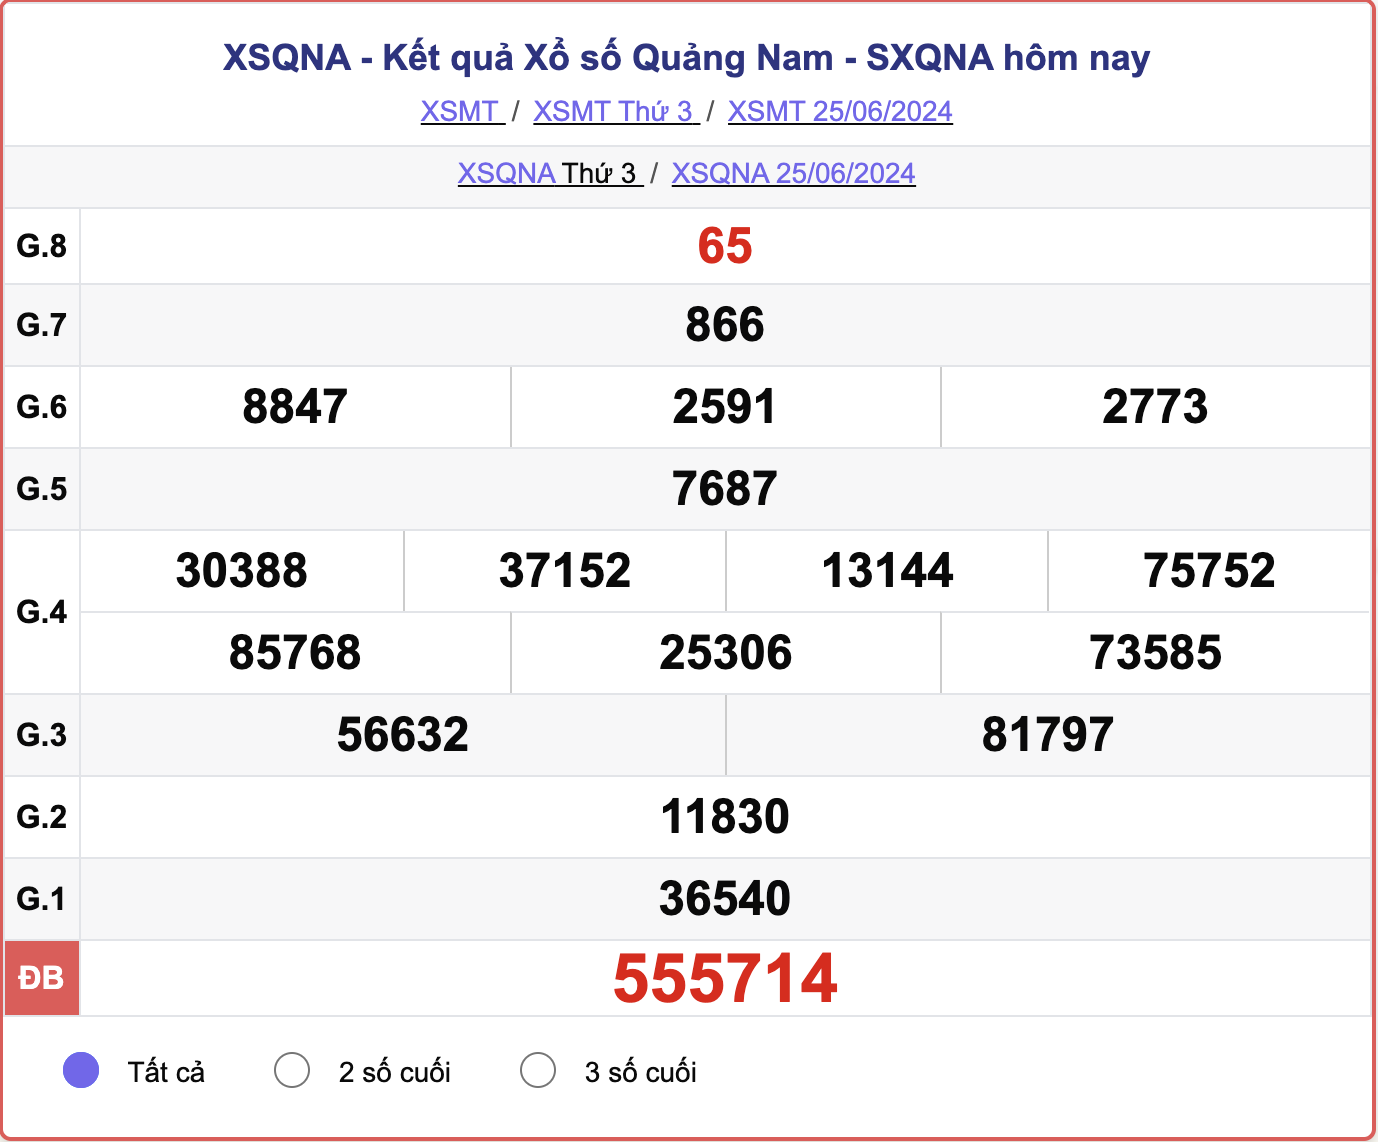 XSQNA 25/6, kết quả xổ số Quảng Nam hôm nay 25/6/2024.